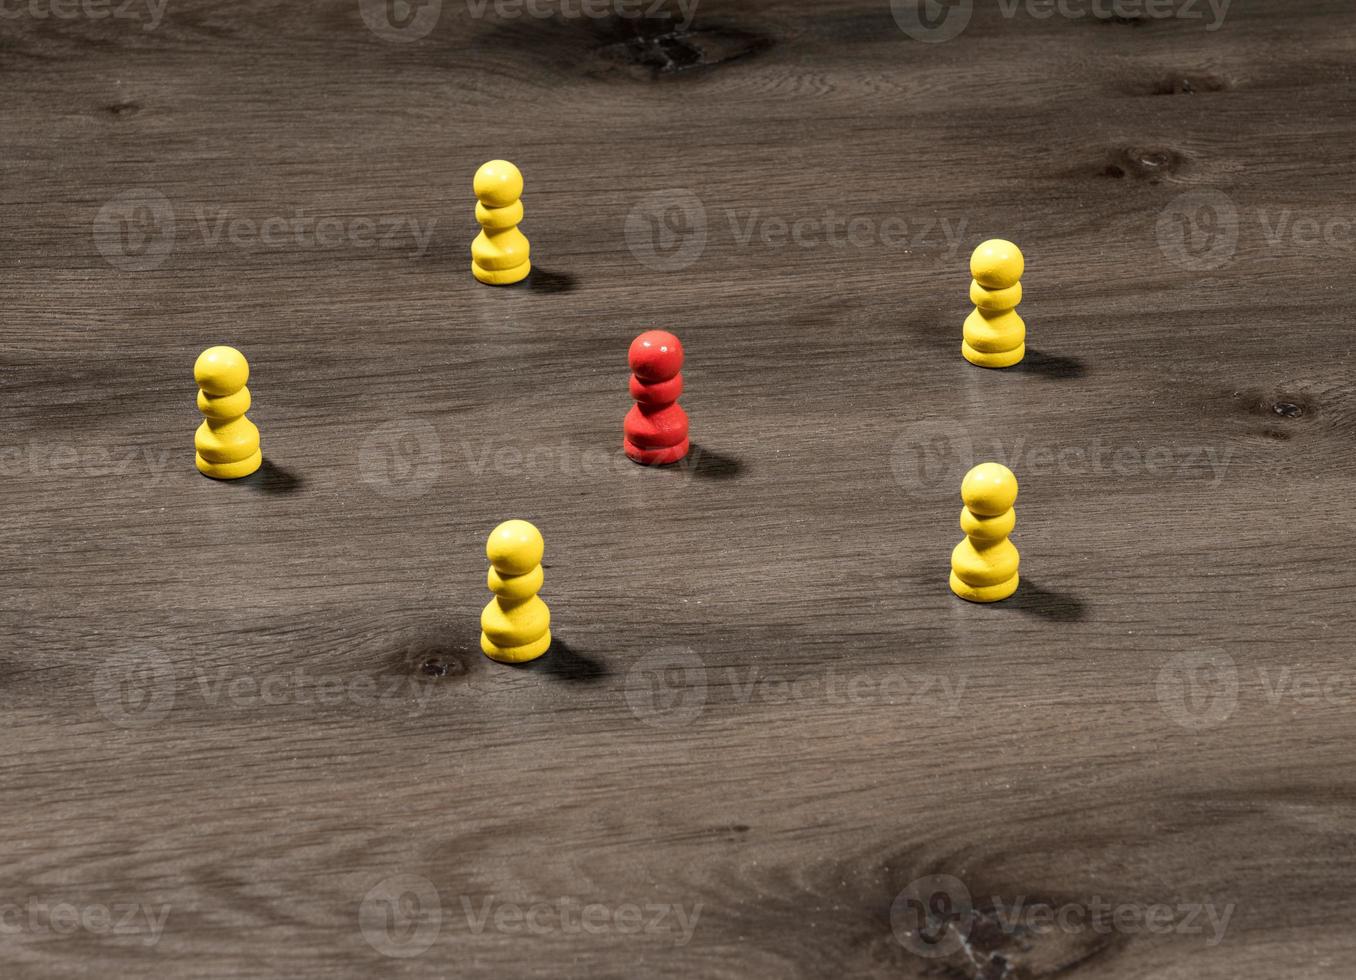 pinos de madeira amarelos ao redor do vermelho para ilustrar liderança ou comunicação de mídia social foto